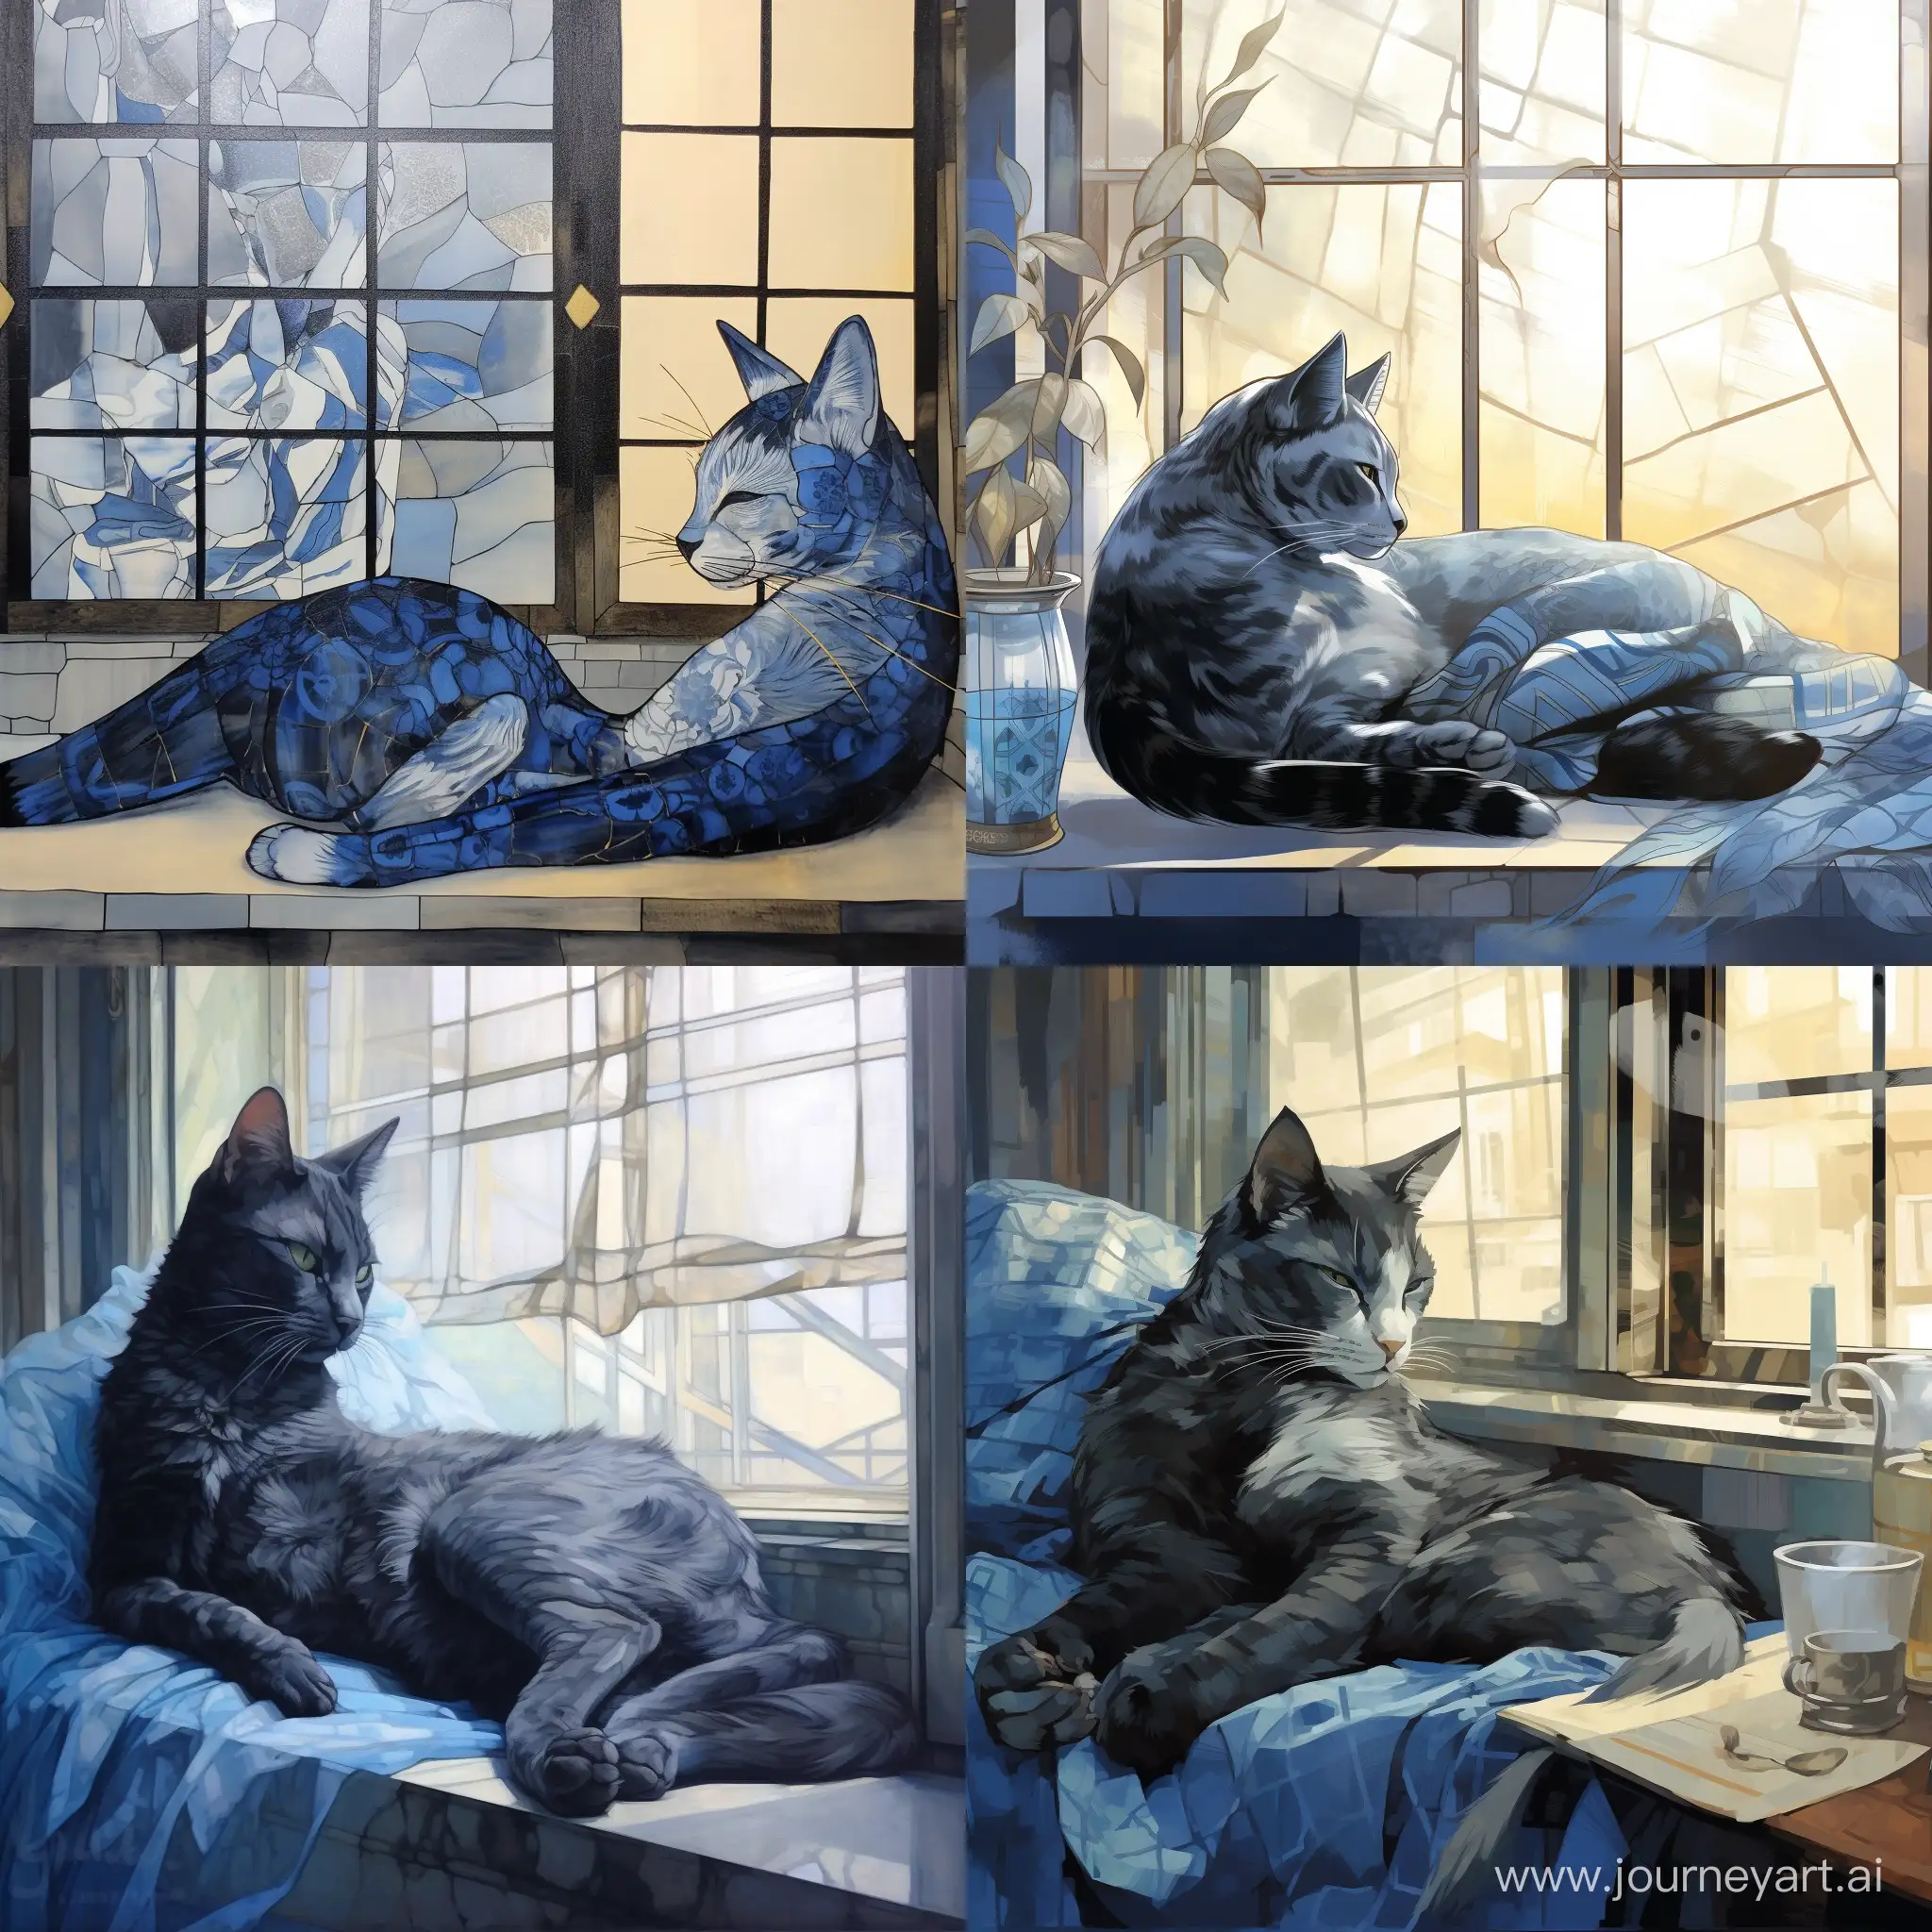 Kintsugi, голубая кошка с черными узорами лениво разлеглась на фоне окна, мягкий свет проникает через окна отбрасывая блики на кошку